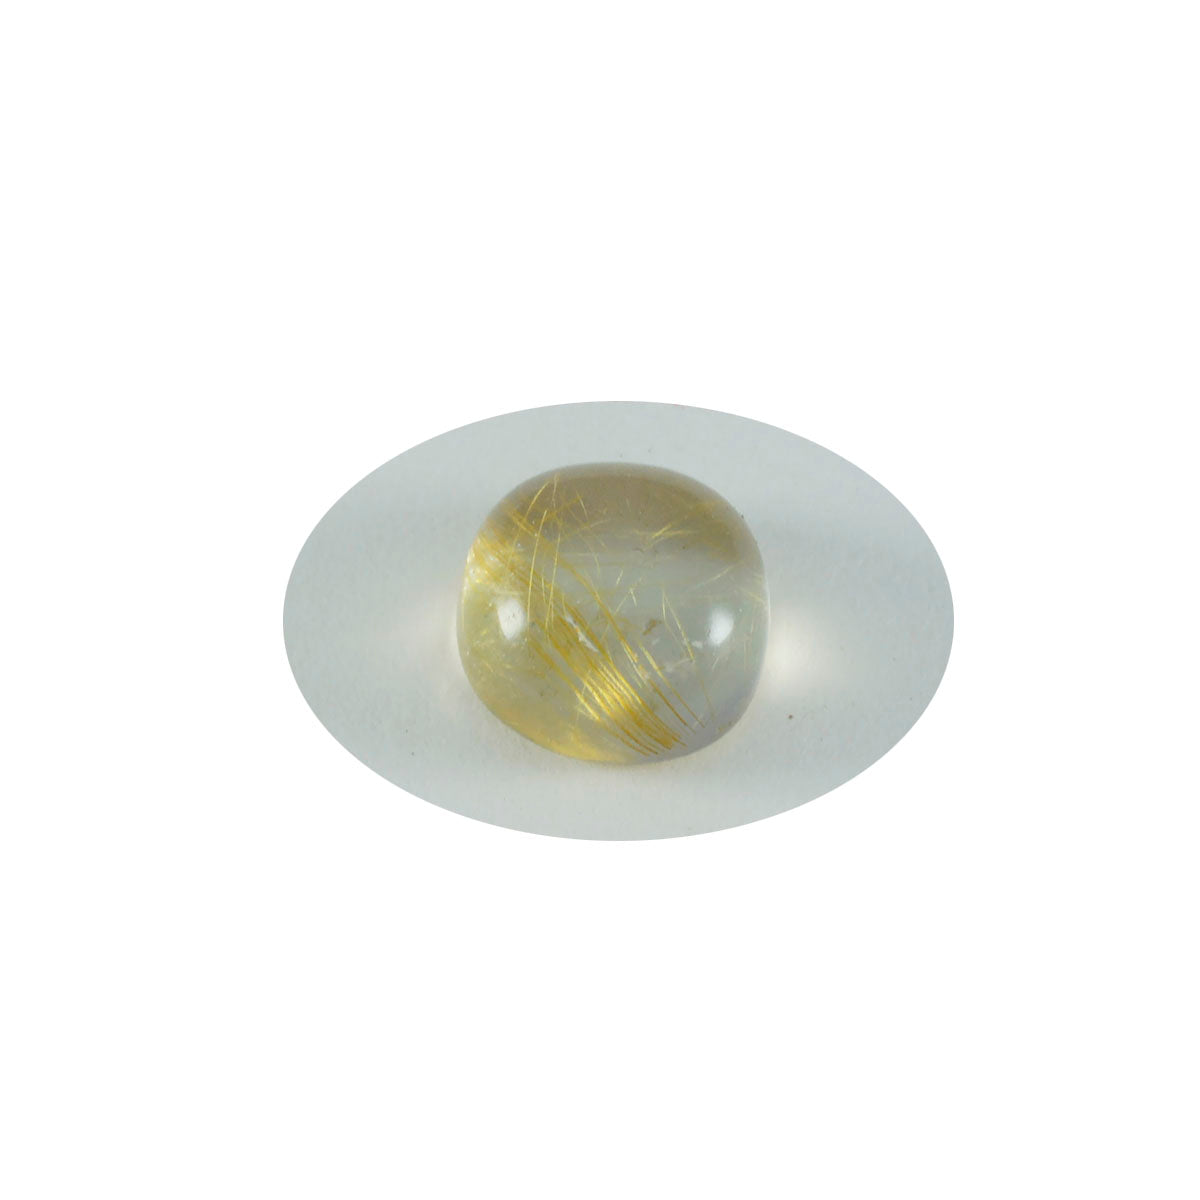 Riyogems – cabochon de quartz multi-rutile, 8x8mm, en forme de coussin, jolies pierres précieuses en vrac de qualité, 1 pièce